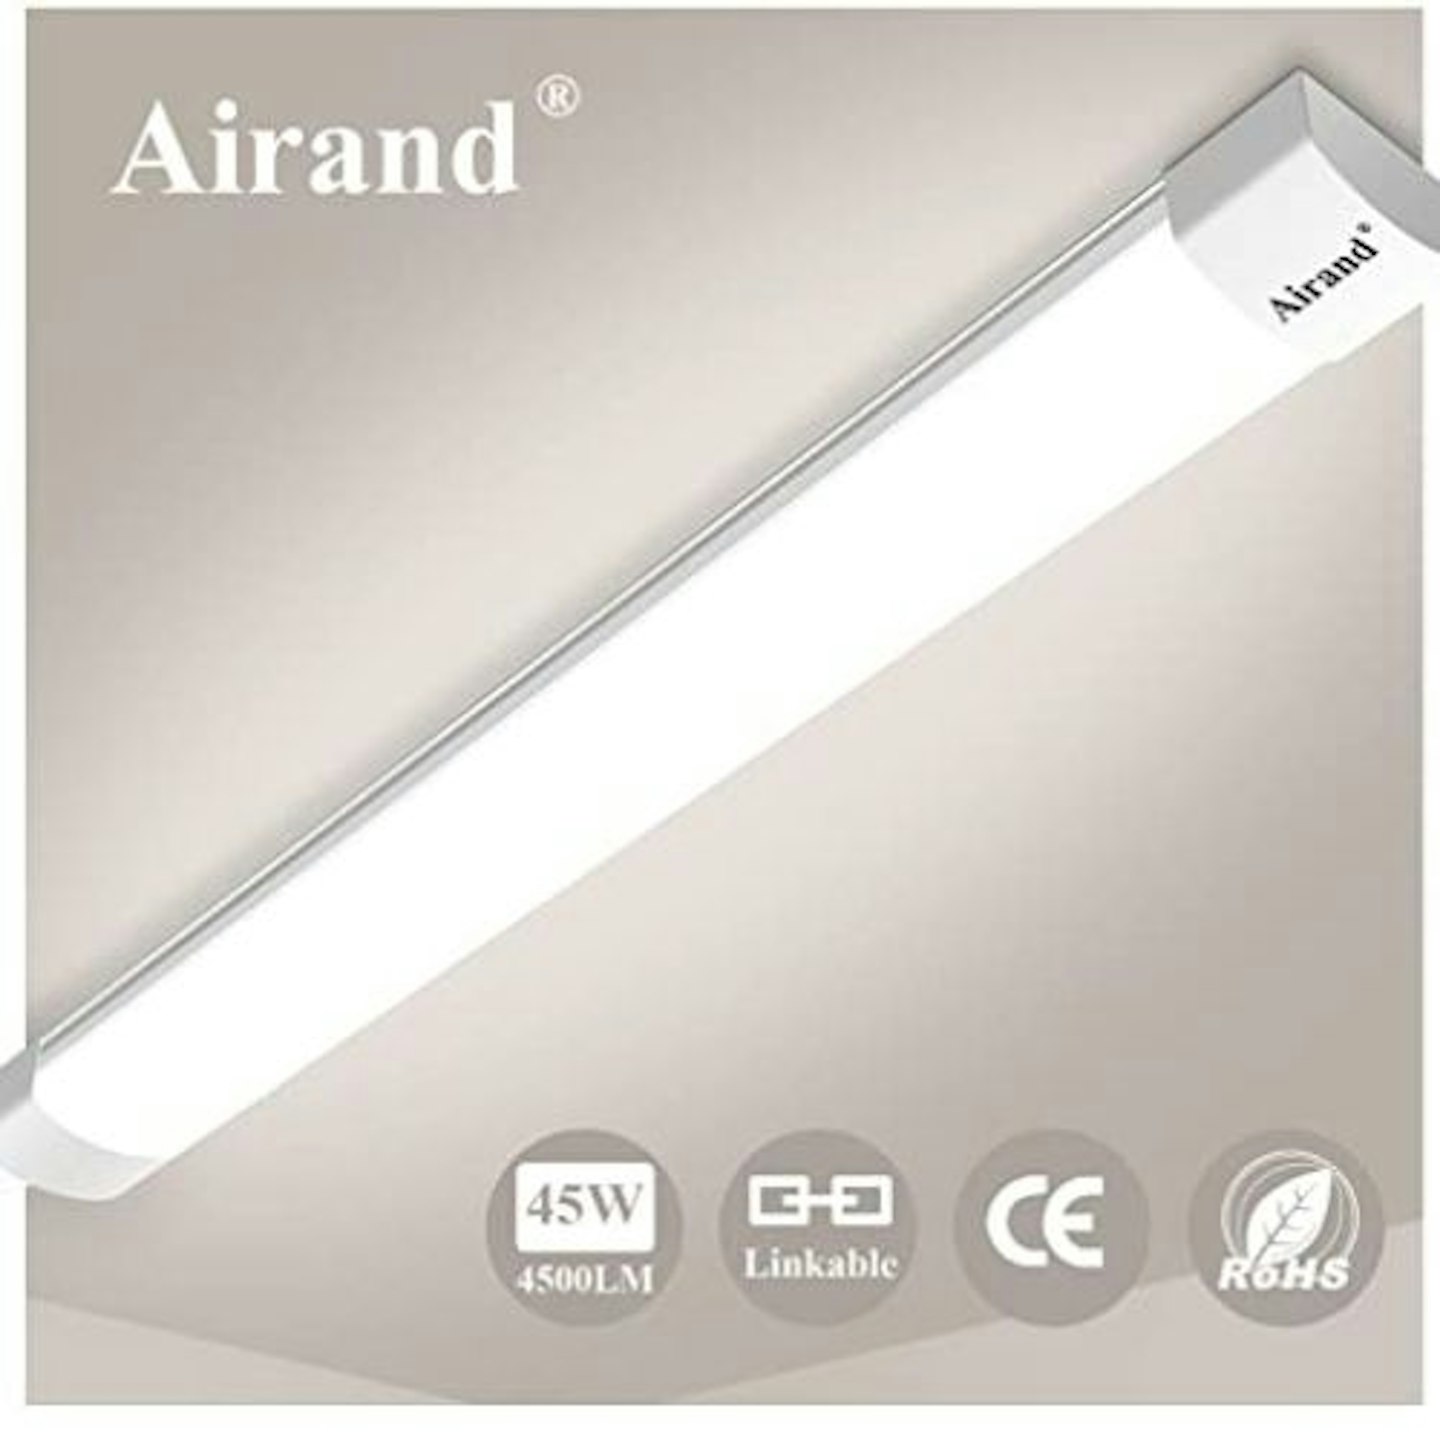 Airand Linkable LED Batten Light